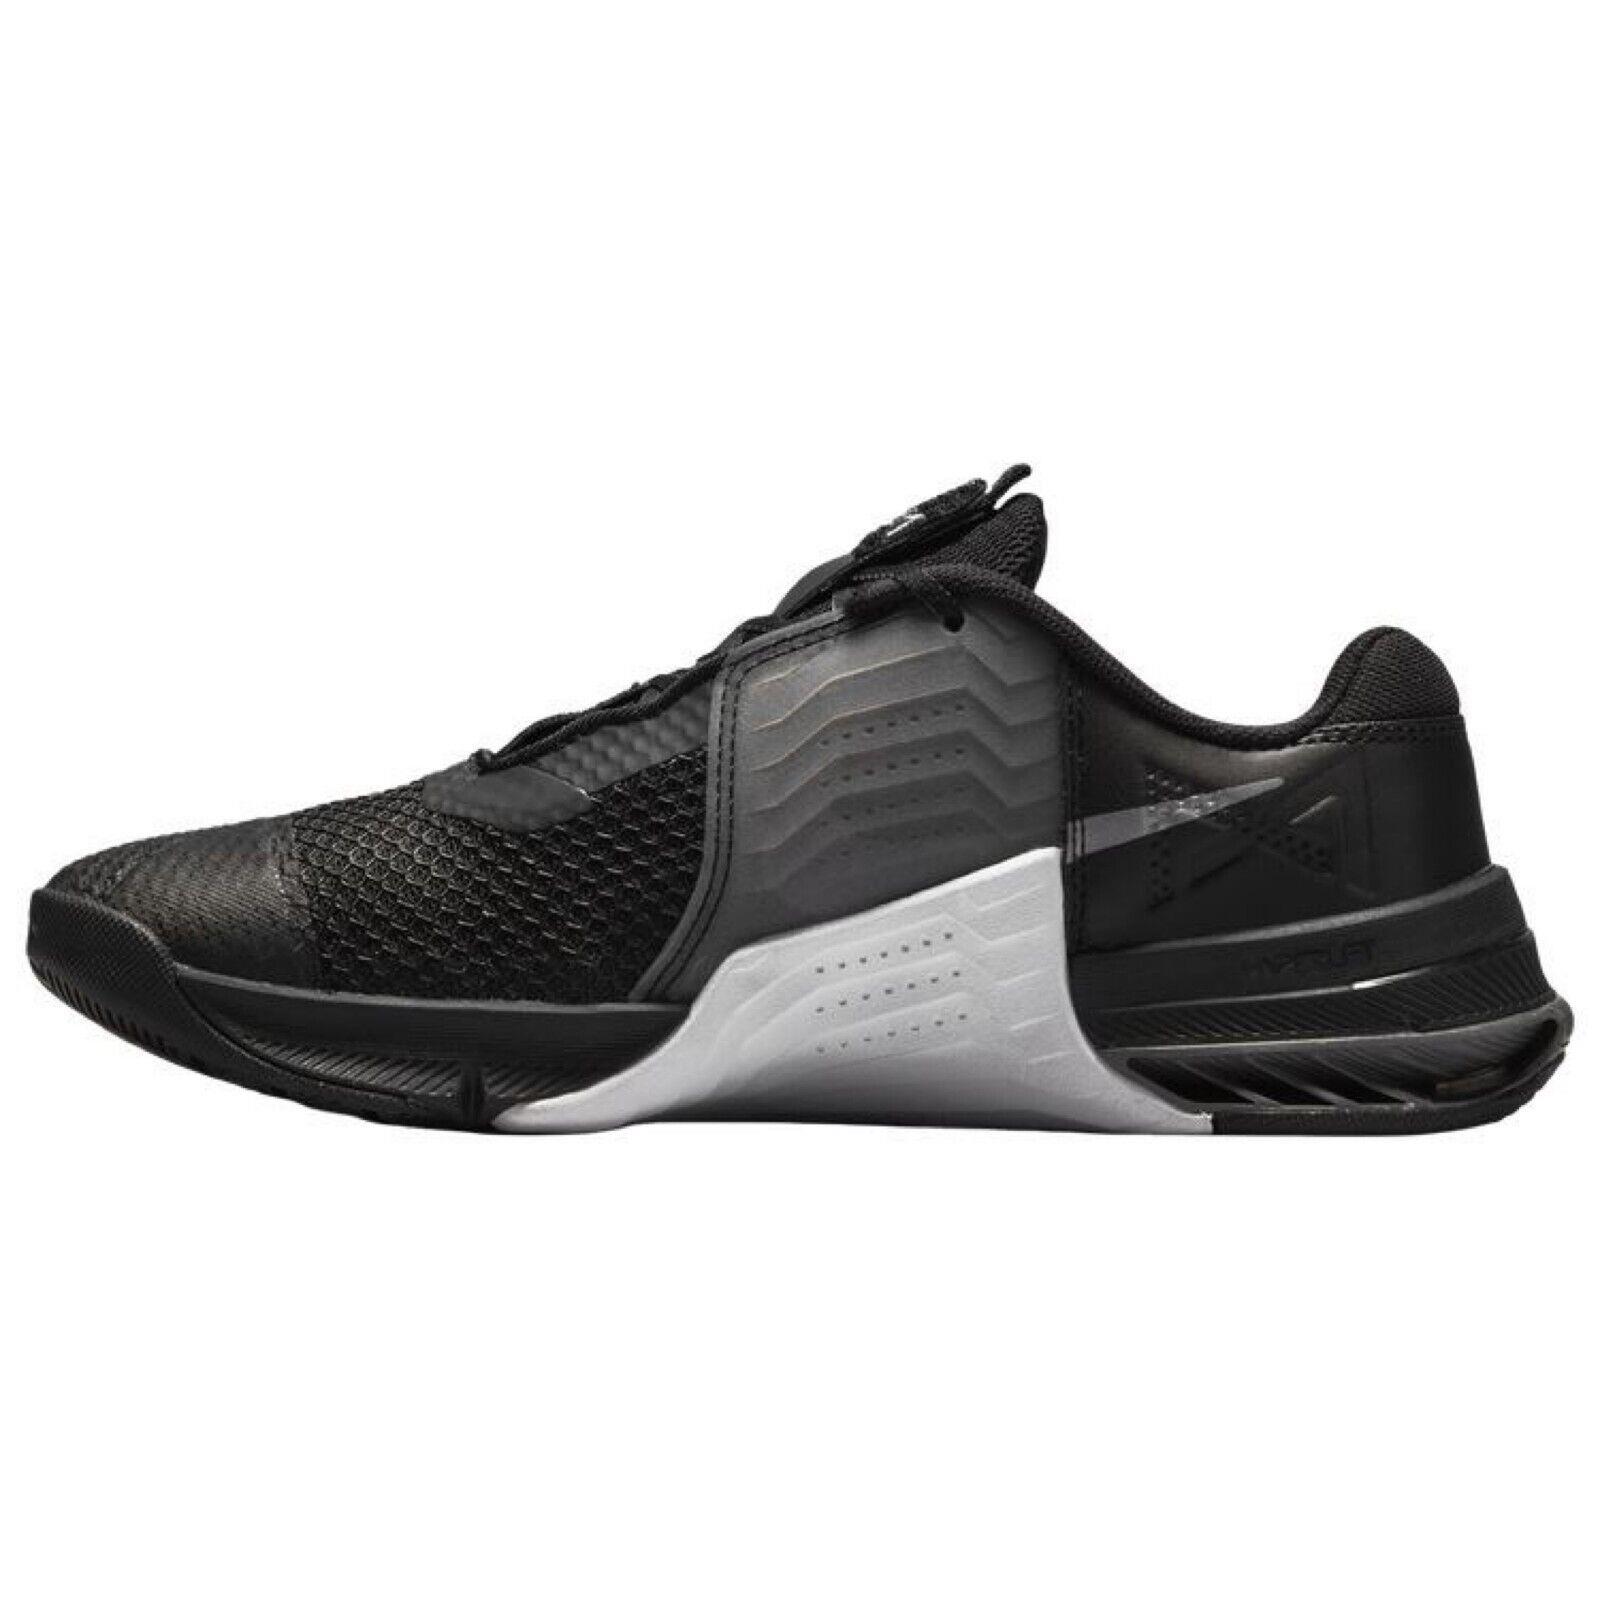 Nike shoes Metcon - Black , Black/Metallic Dk Gray Manufacturer 6